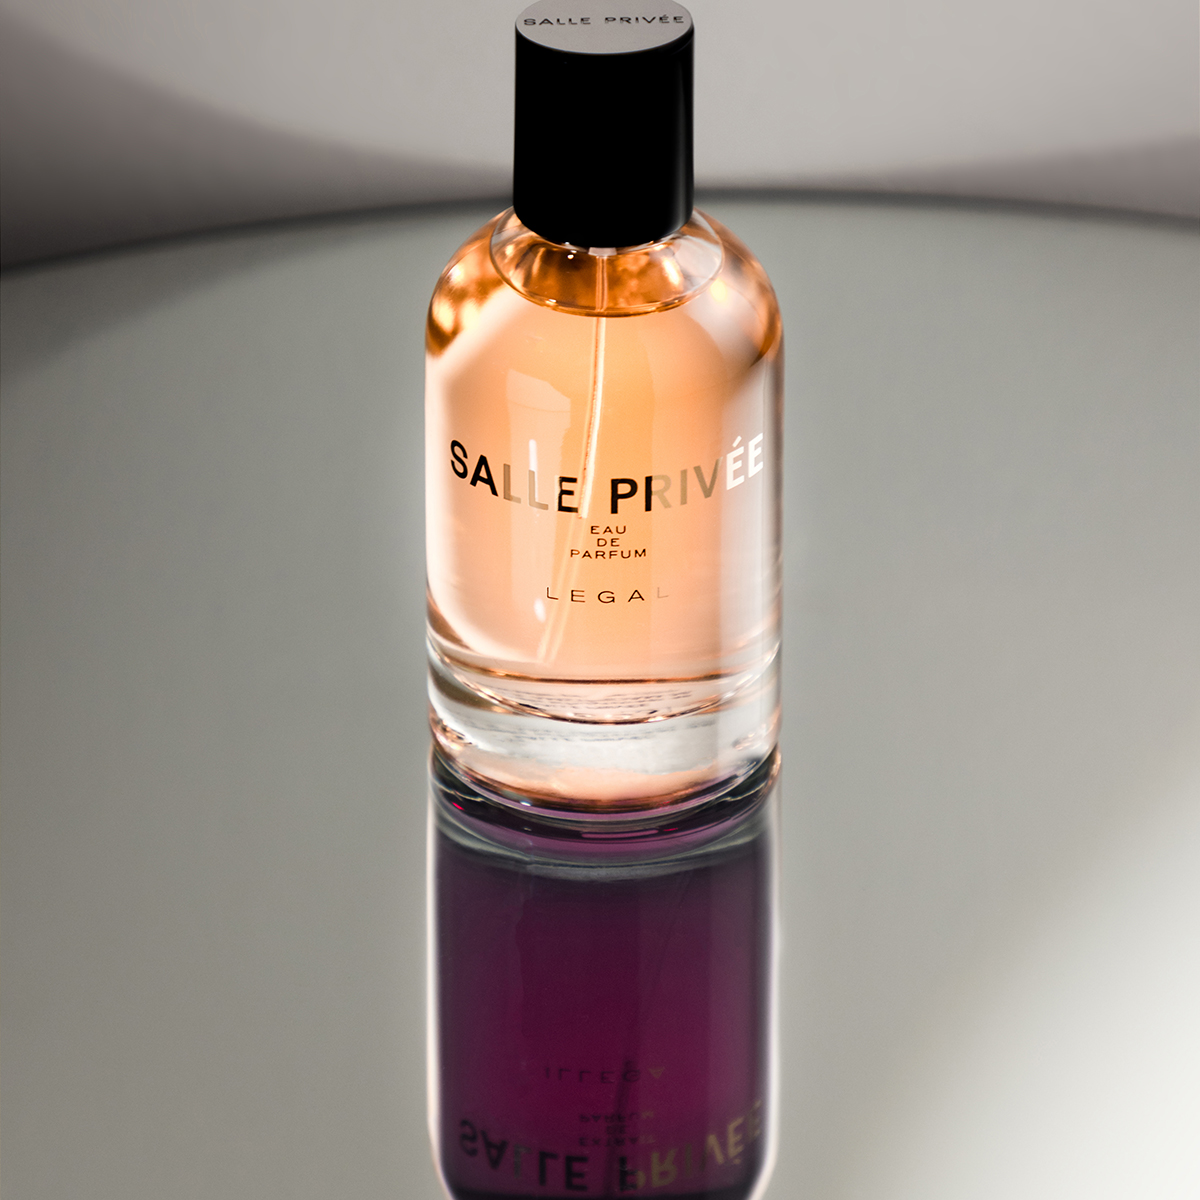 SALLE PRIVEE - Legal Eau de Parfum